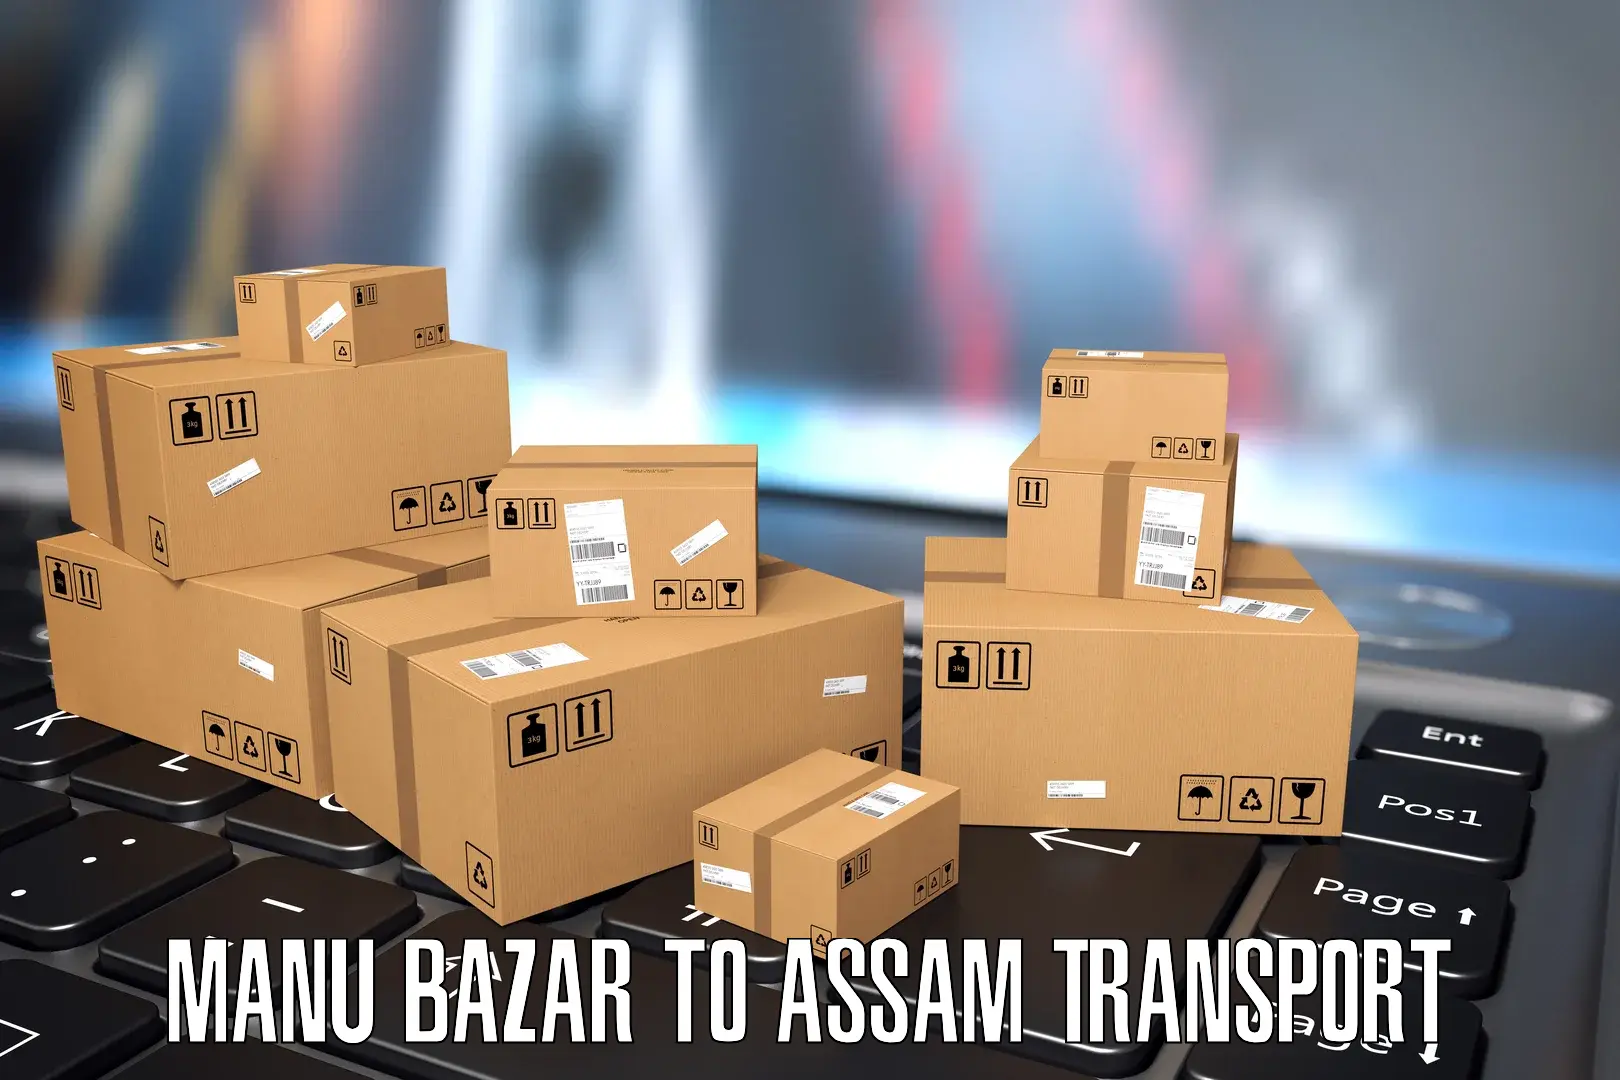 Transport shared services Manu Bazar to Udharbond